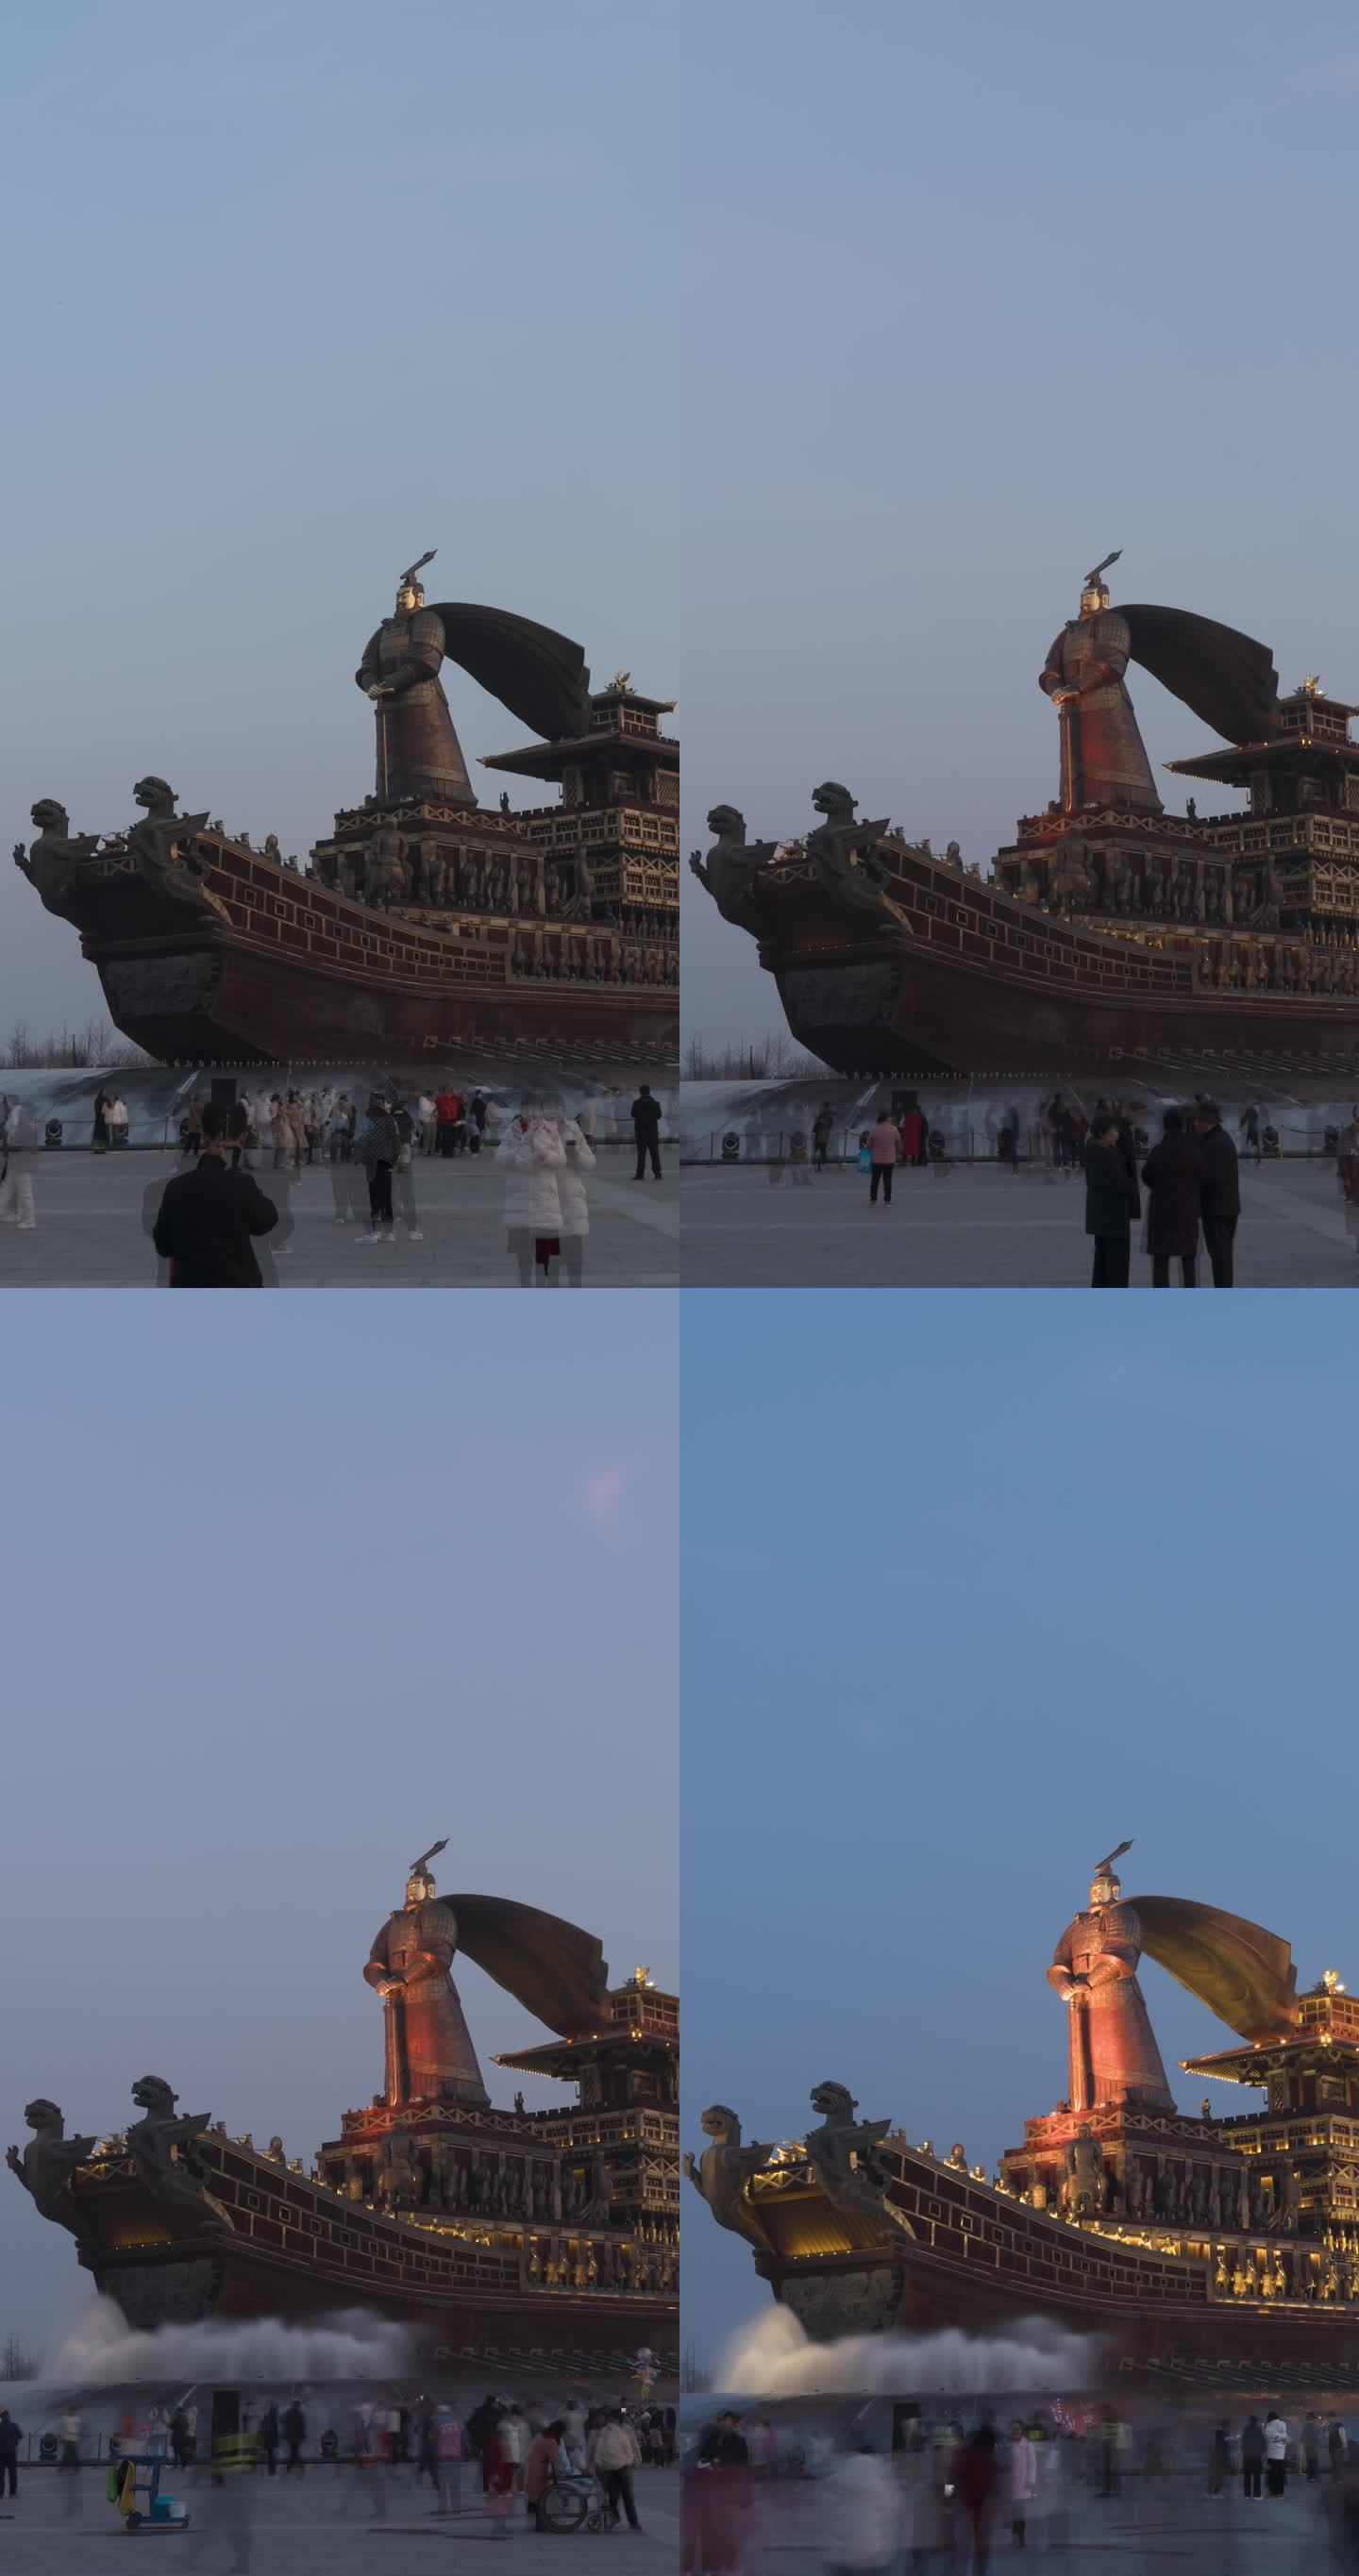 西安昆明池汉武大帝雕塑日转夜延时摄影竖版